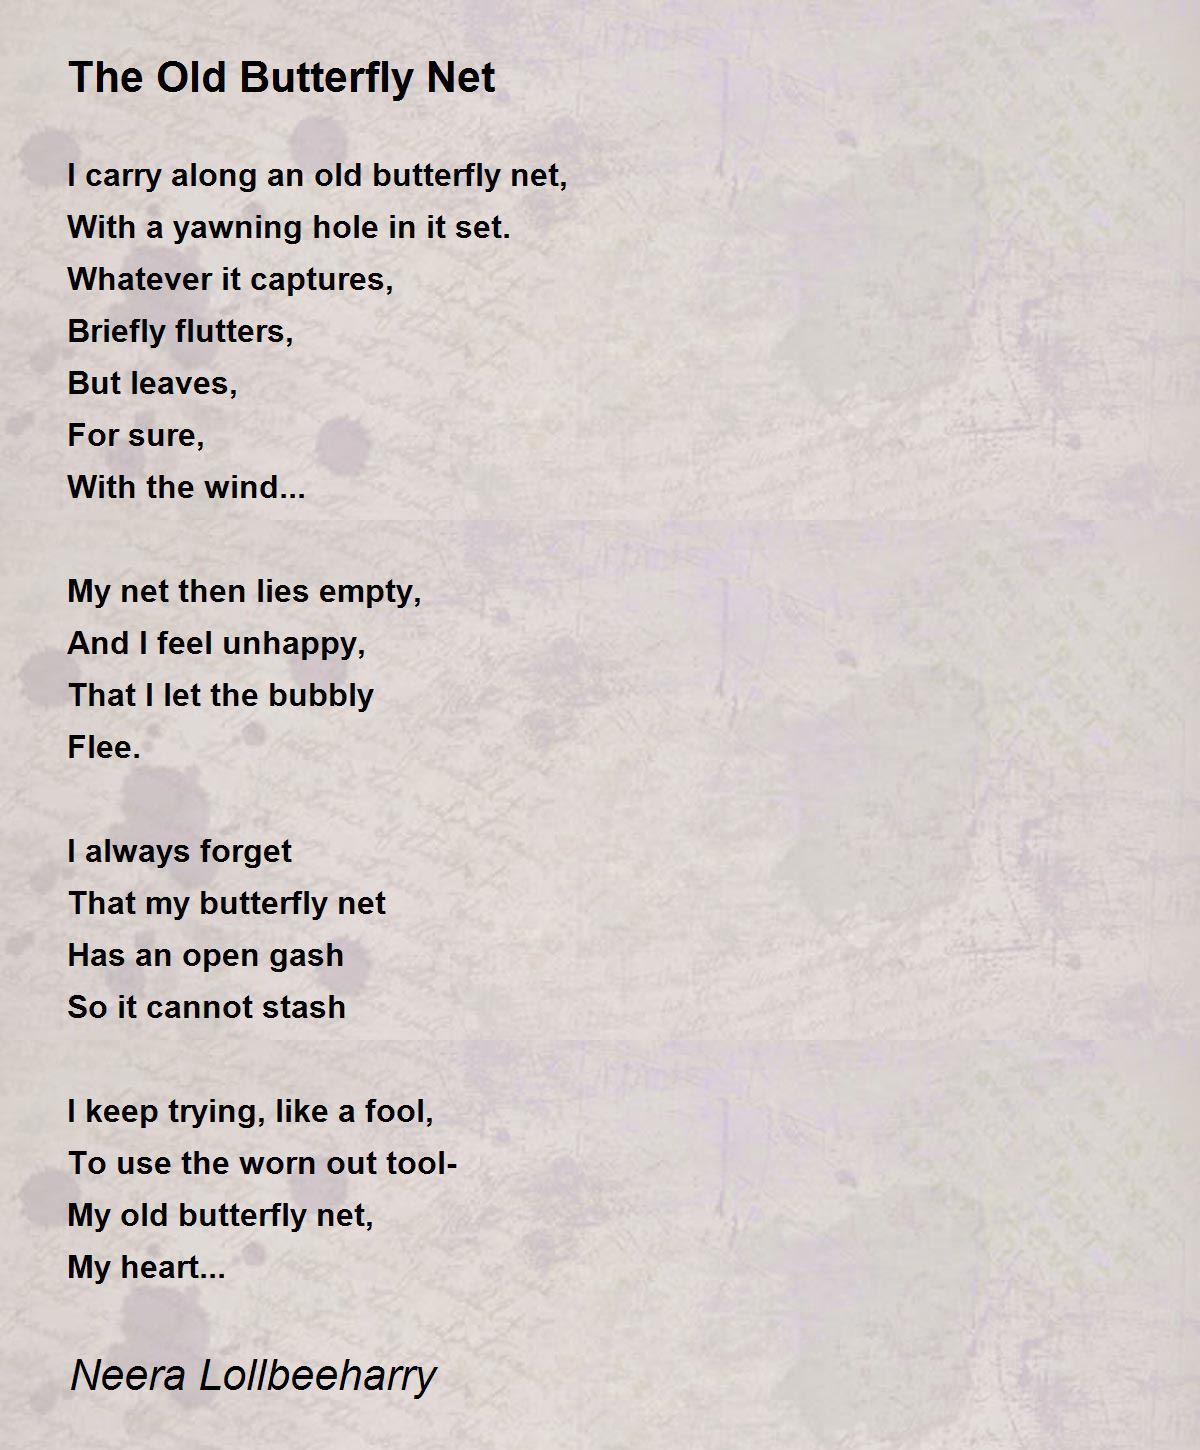 The Old Butterfly Net - The Old Butterfly Net Poem by Neera Lollbeeharry